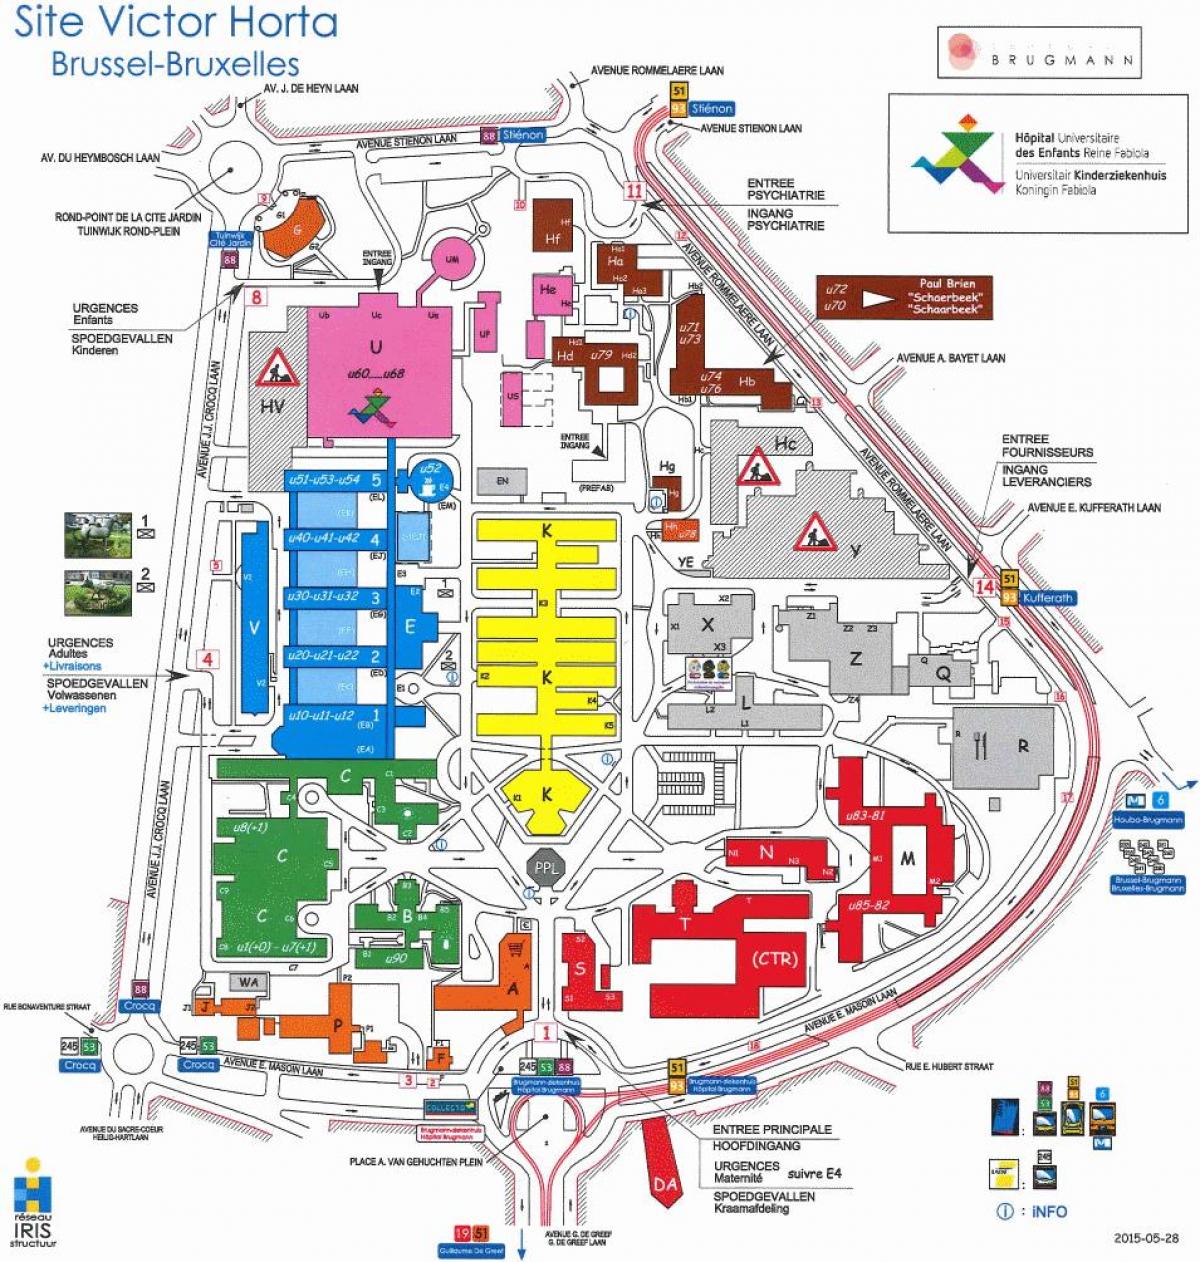 Bruxelles hospital mapa